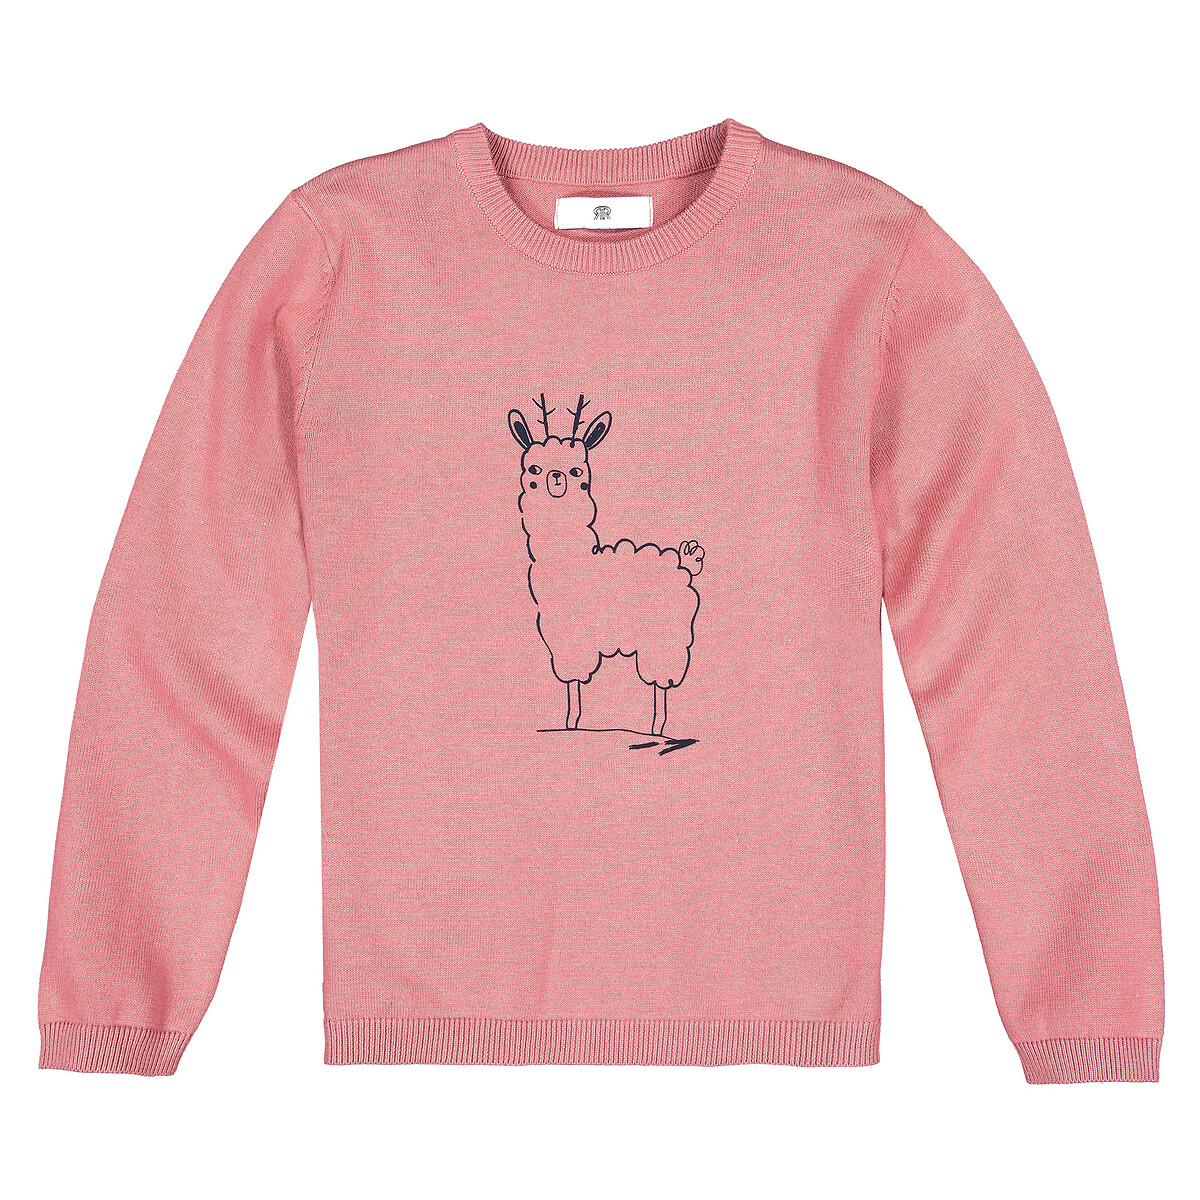 Пуловер La Redoute С круглым вырезом из тонкого трикотажа с принтом  10 лет - 138 см розовый, размер 10 лет - 138 см - фото 2